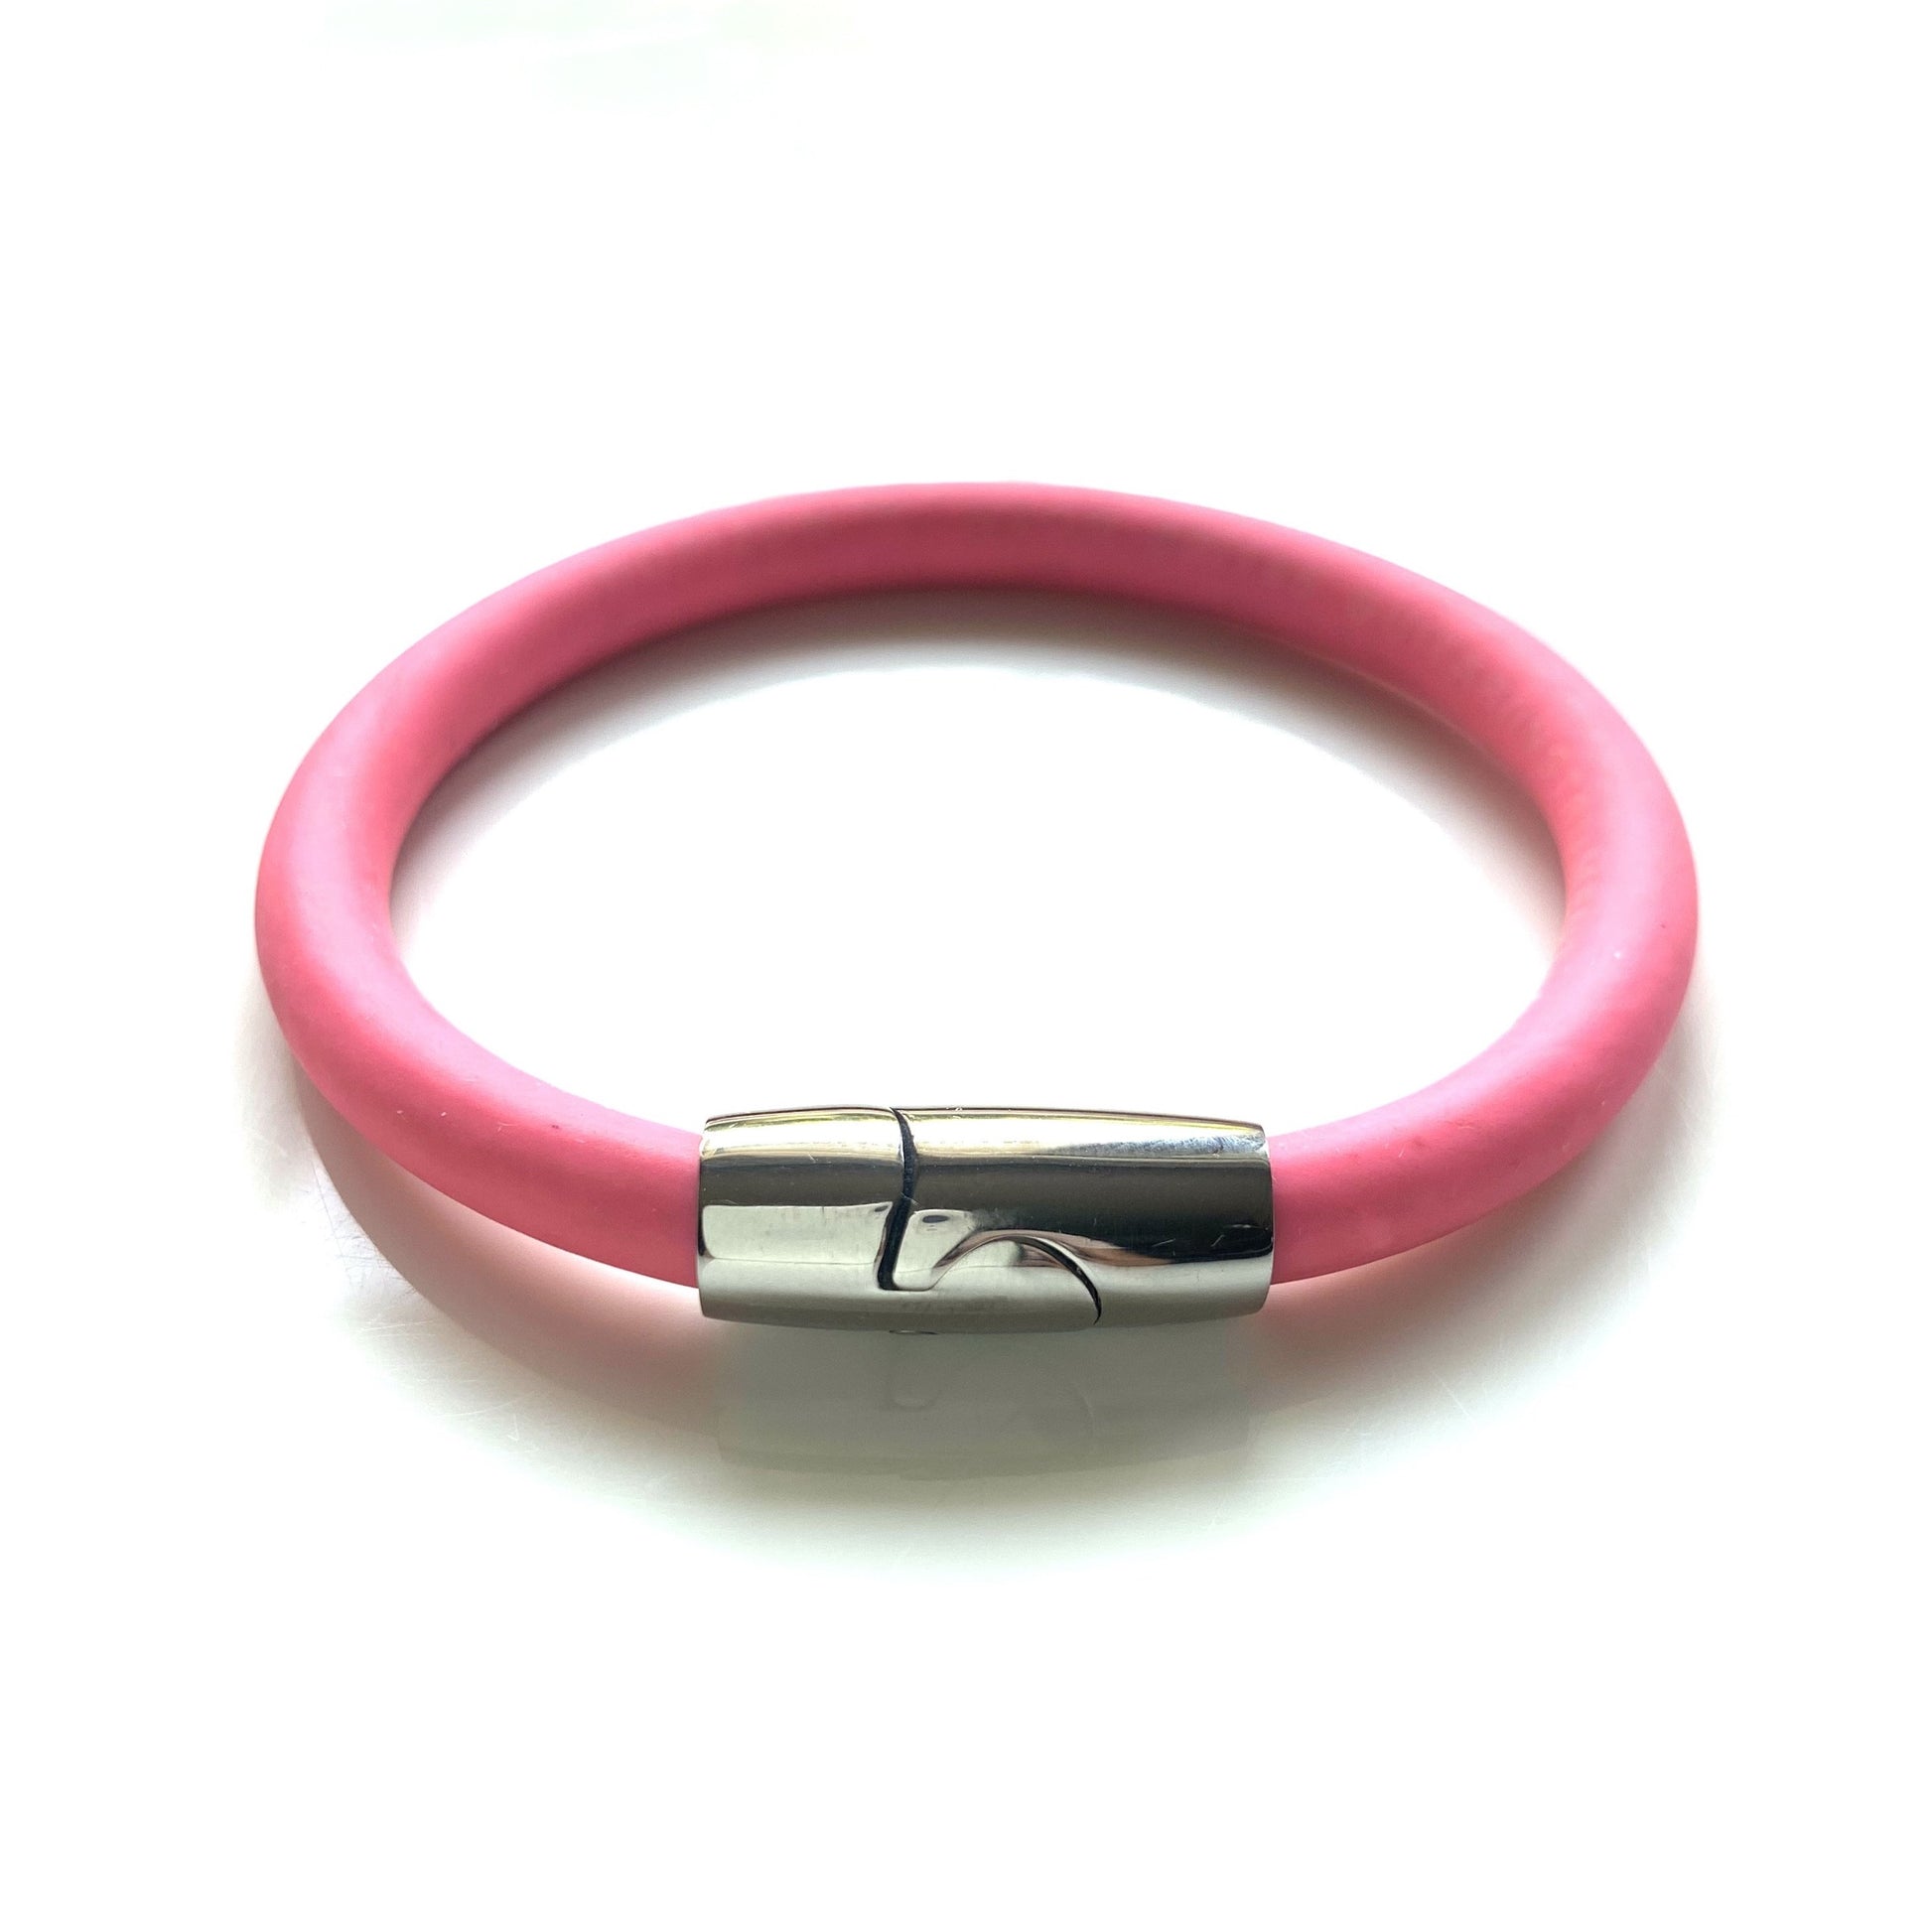 Will Bracelet - Patch Cord Bracelet - pink